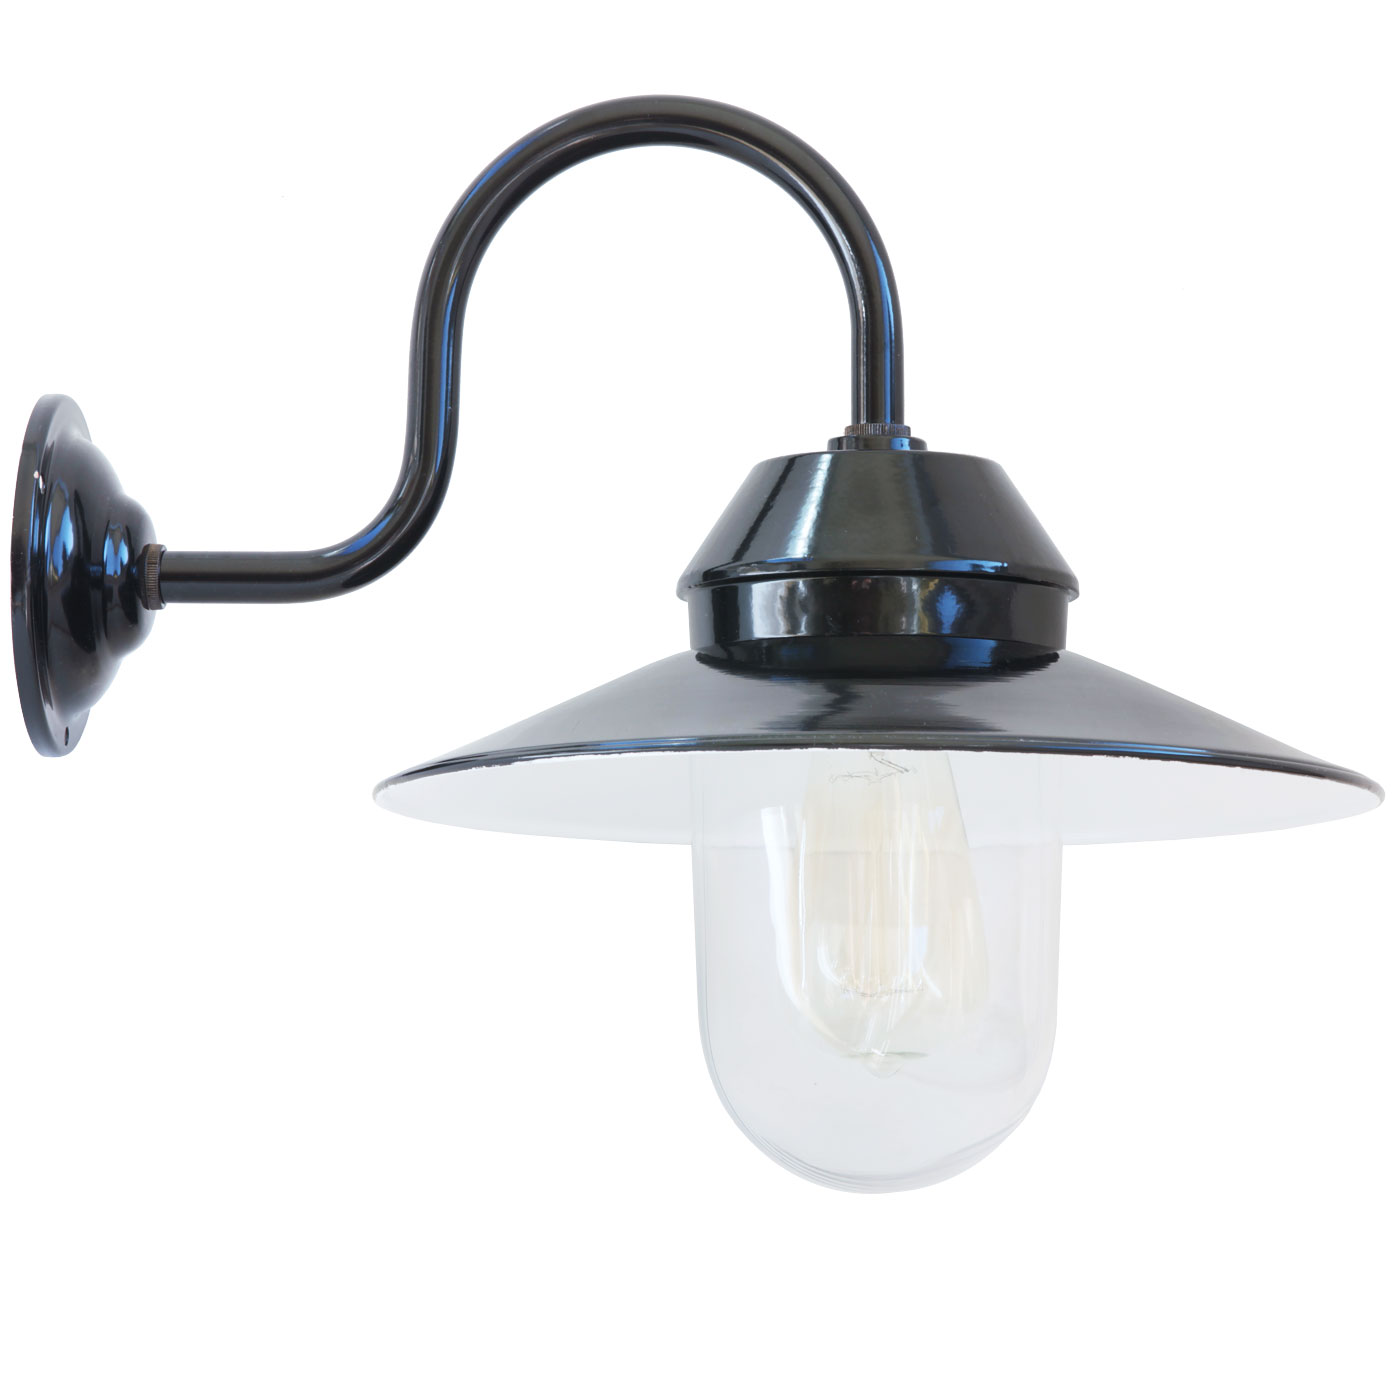 Landhaus-Wandlampe BW 1500 mit gebogenem Wandarm